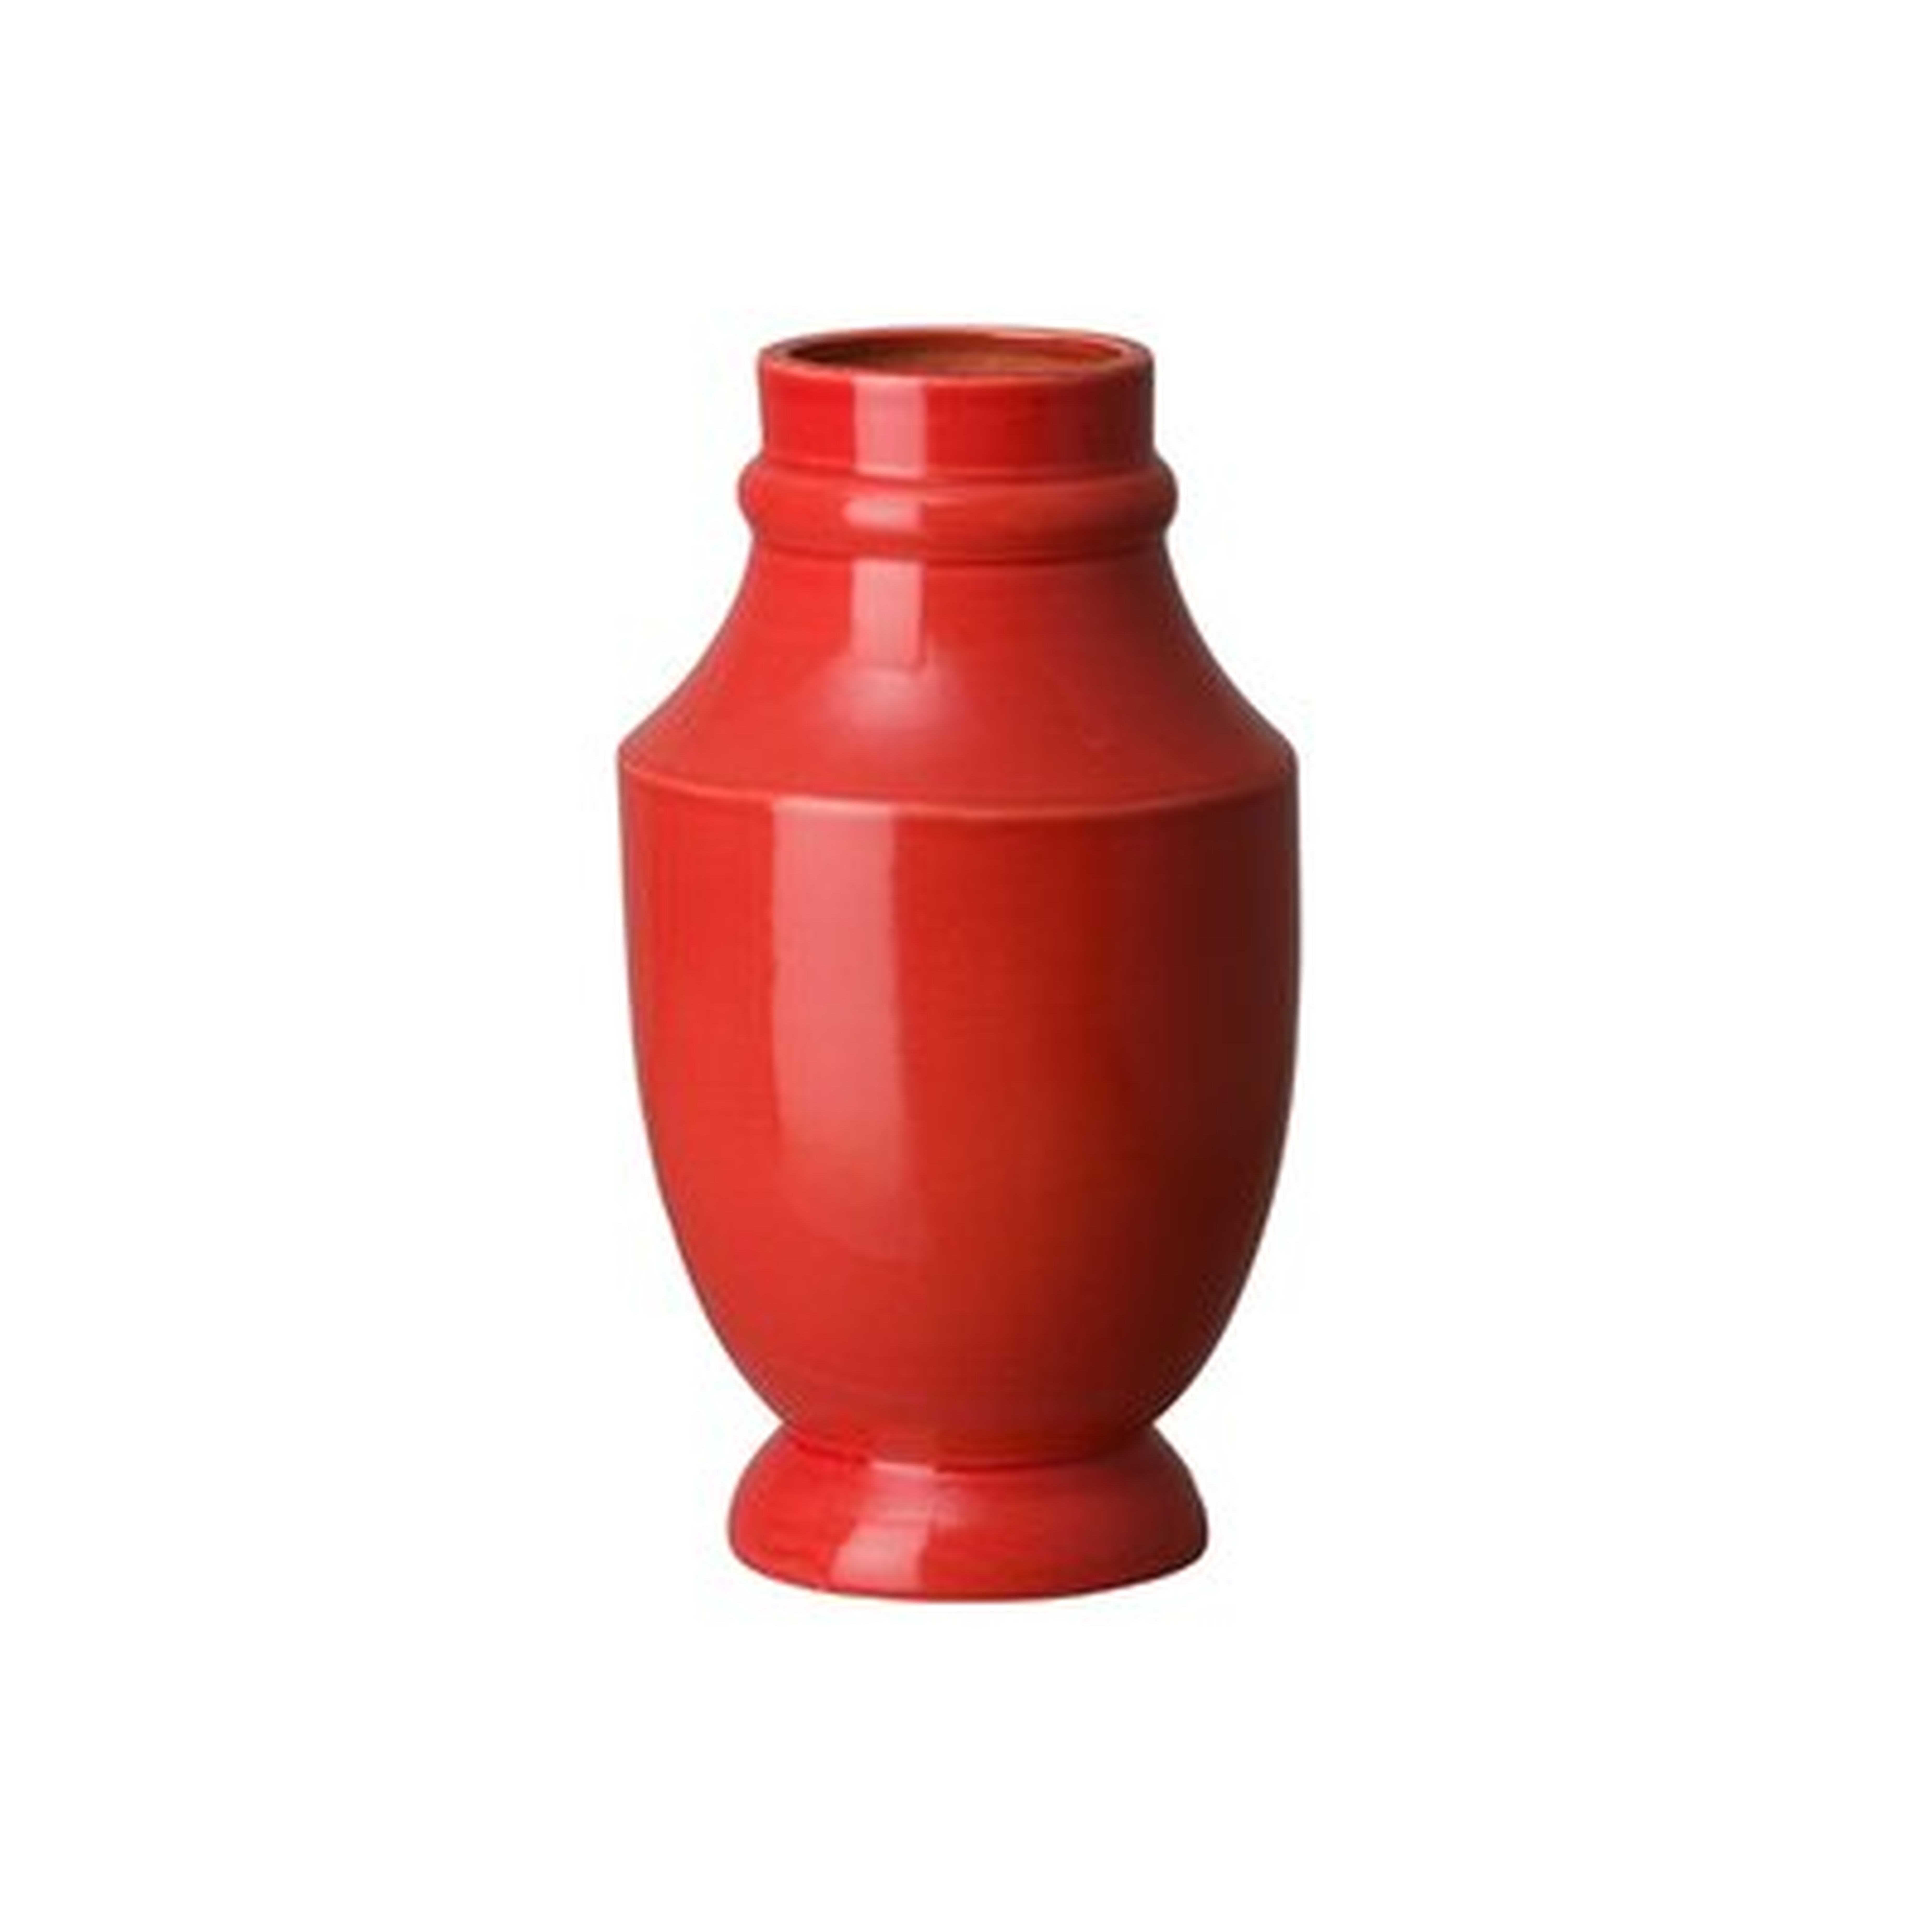 Leda Table Vase - Wayfair